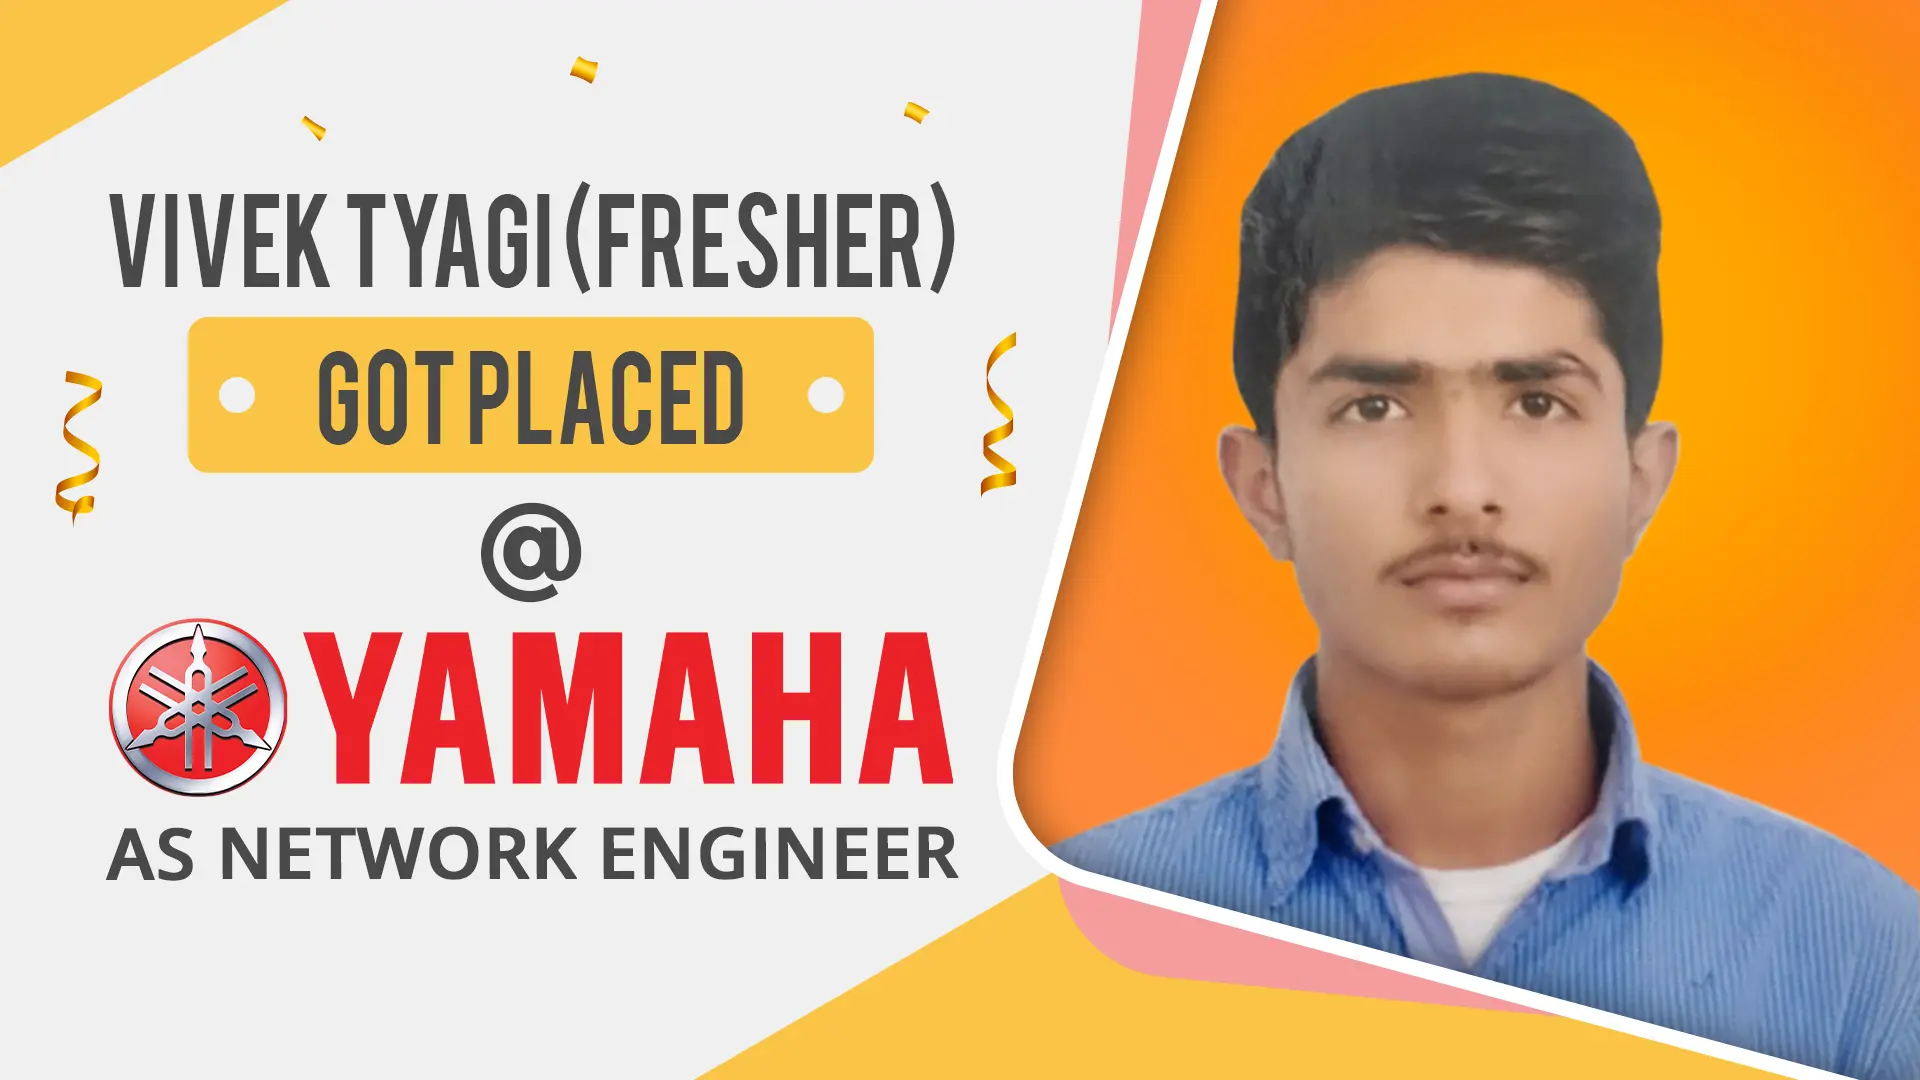 Vivek-Tyagi Placed @ yamaha - PyNet Labs Student